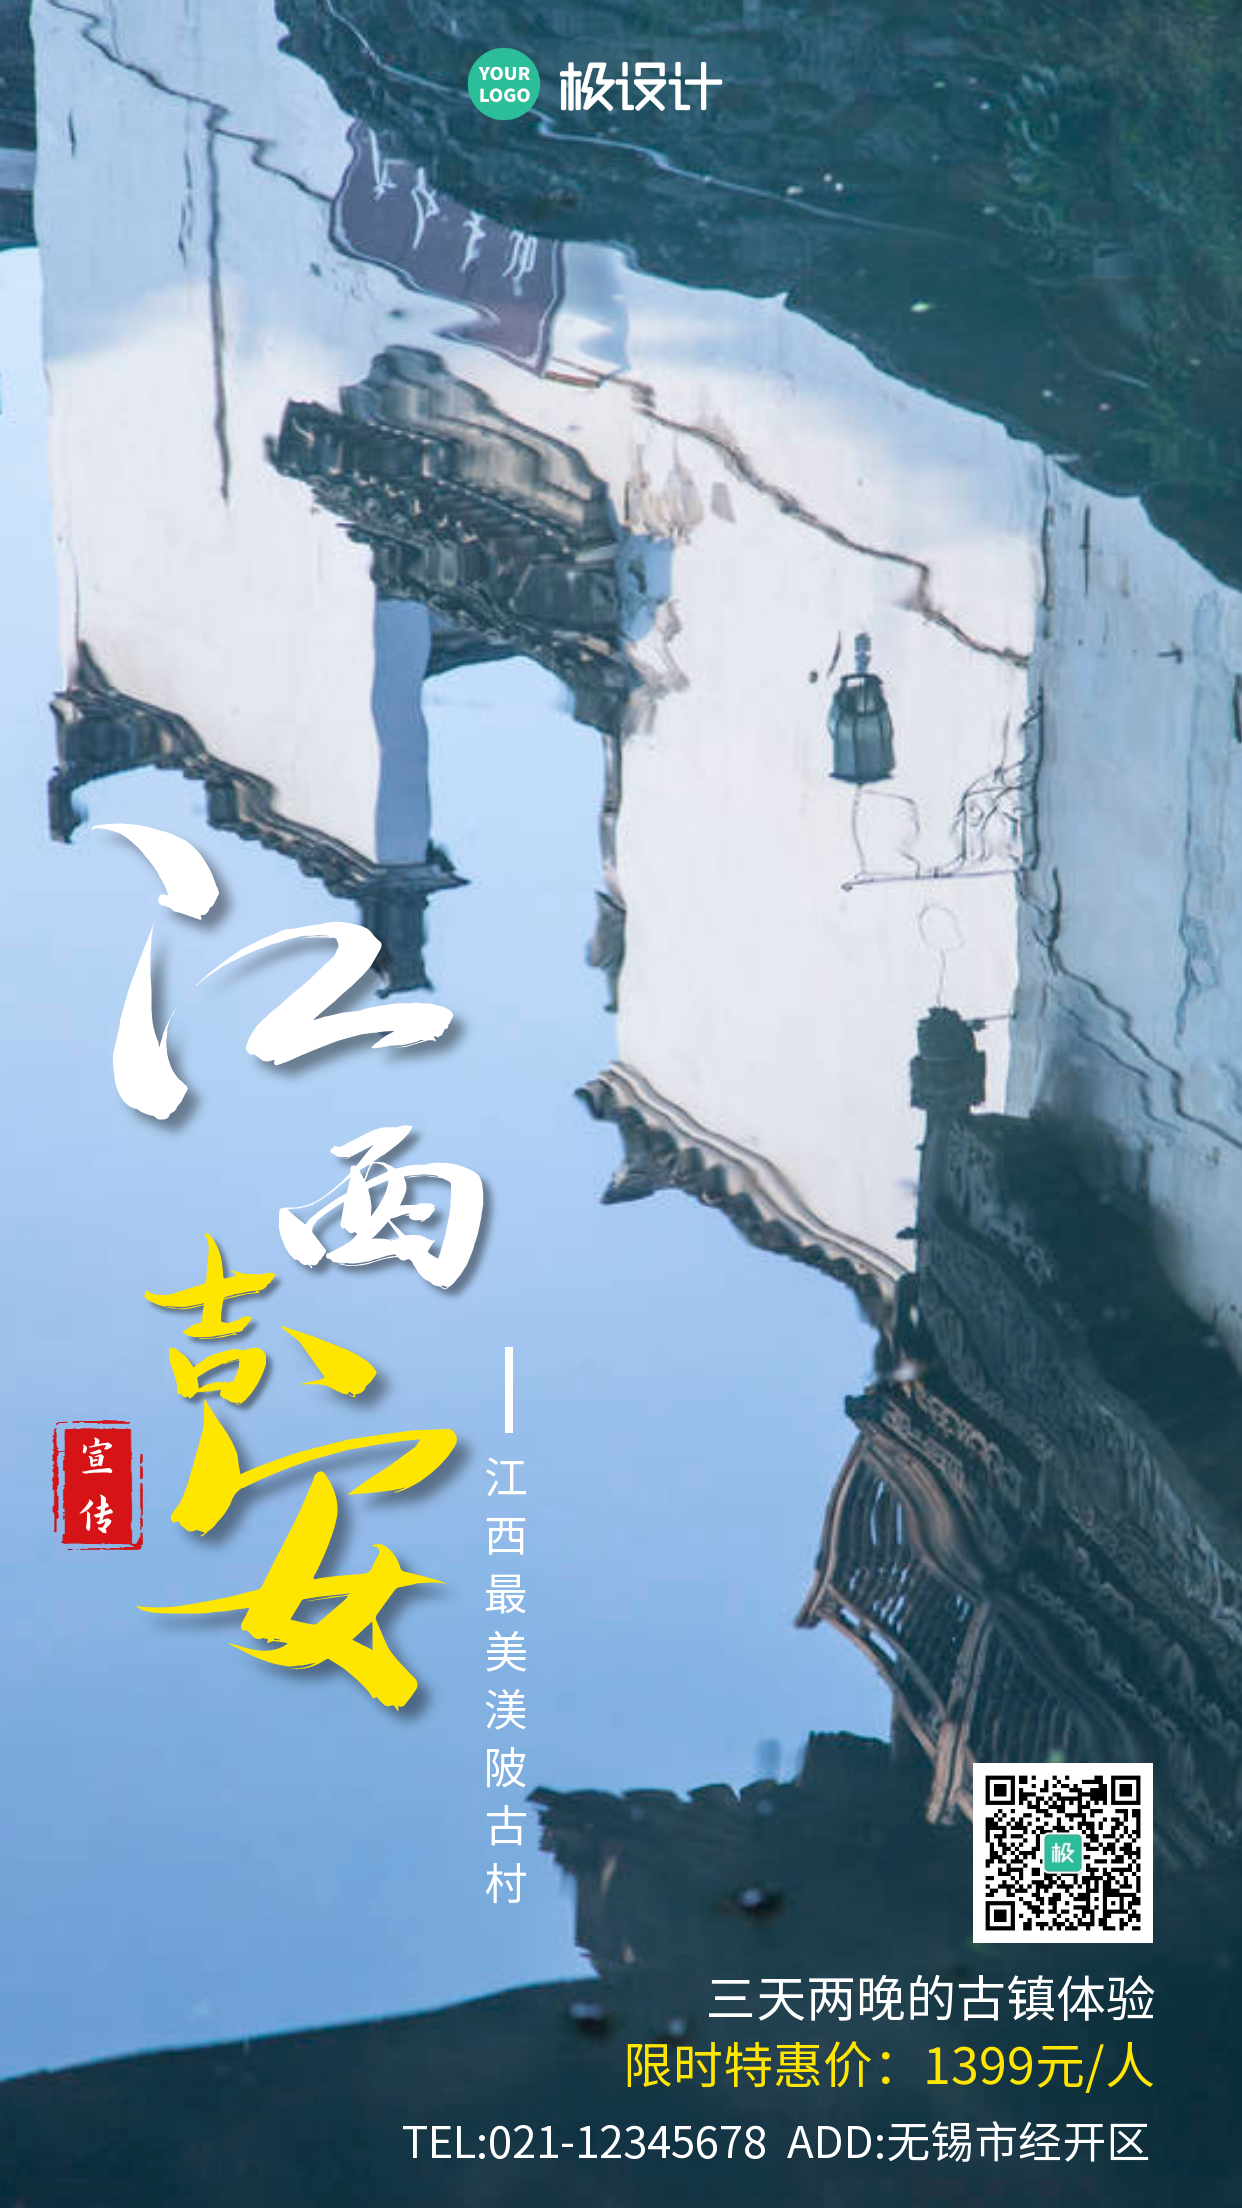 江西吉安渼陂古村旅游宣传简约大气手机海报